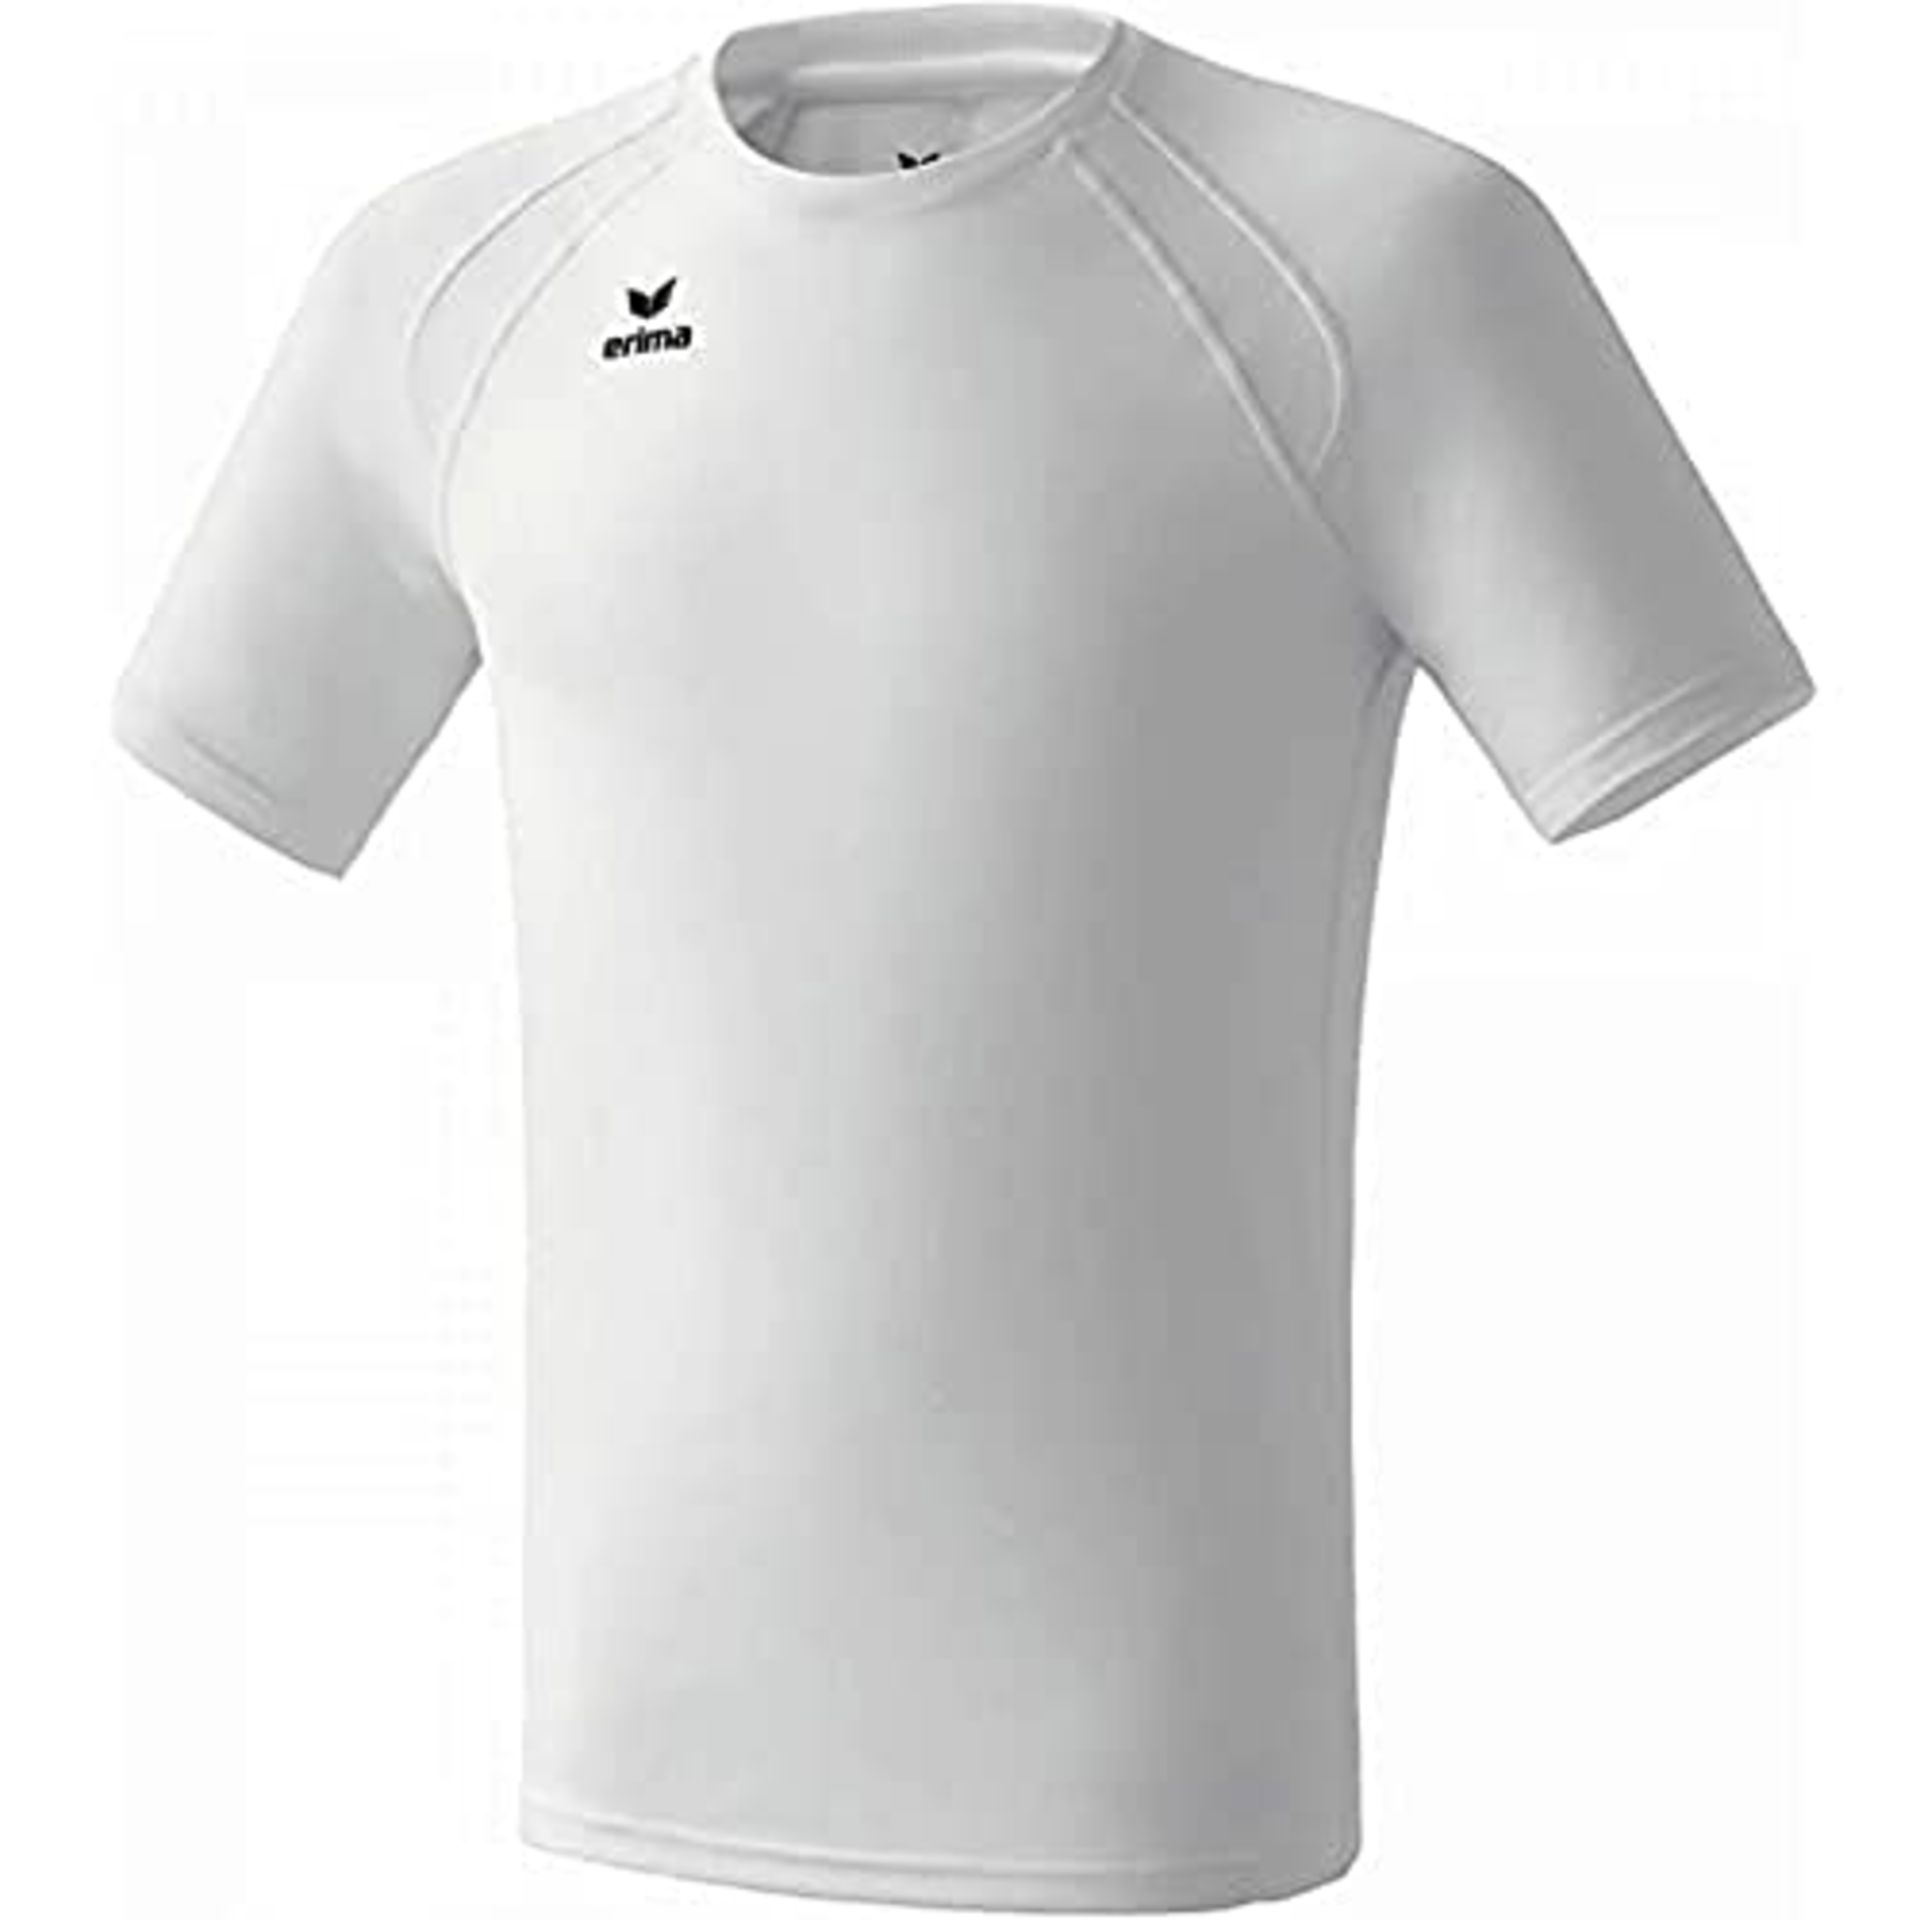 Erima Uni T-shirt Performance for children, White XL, 808202